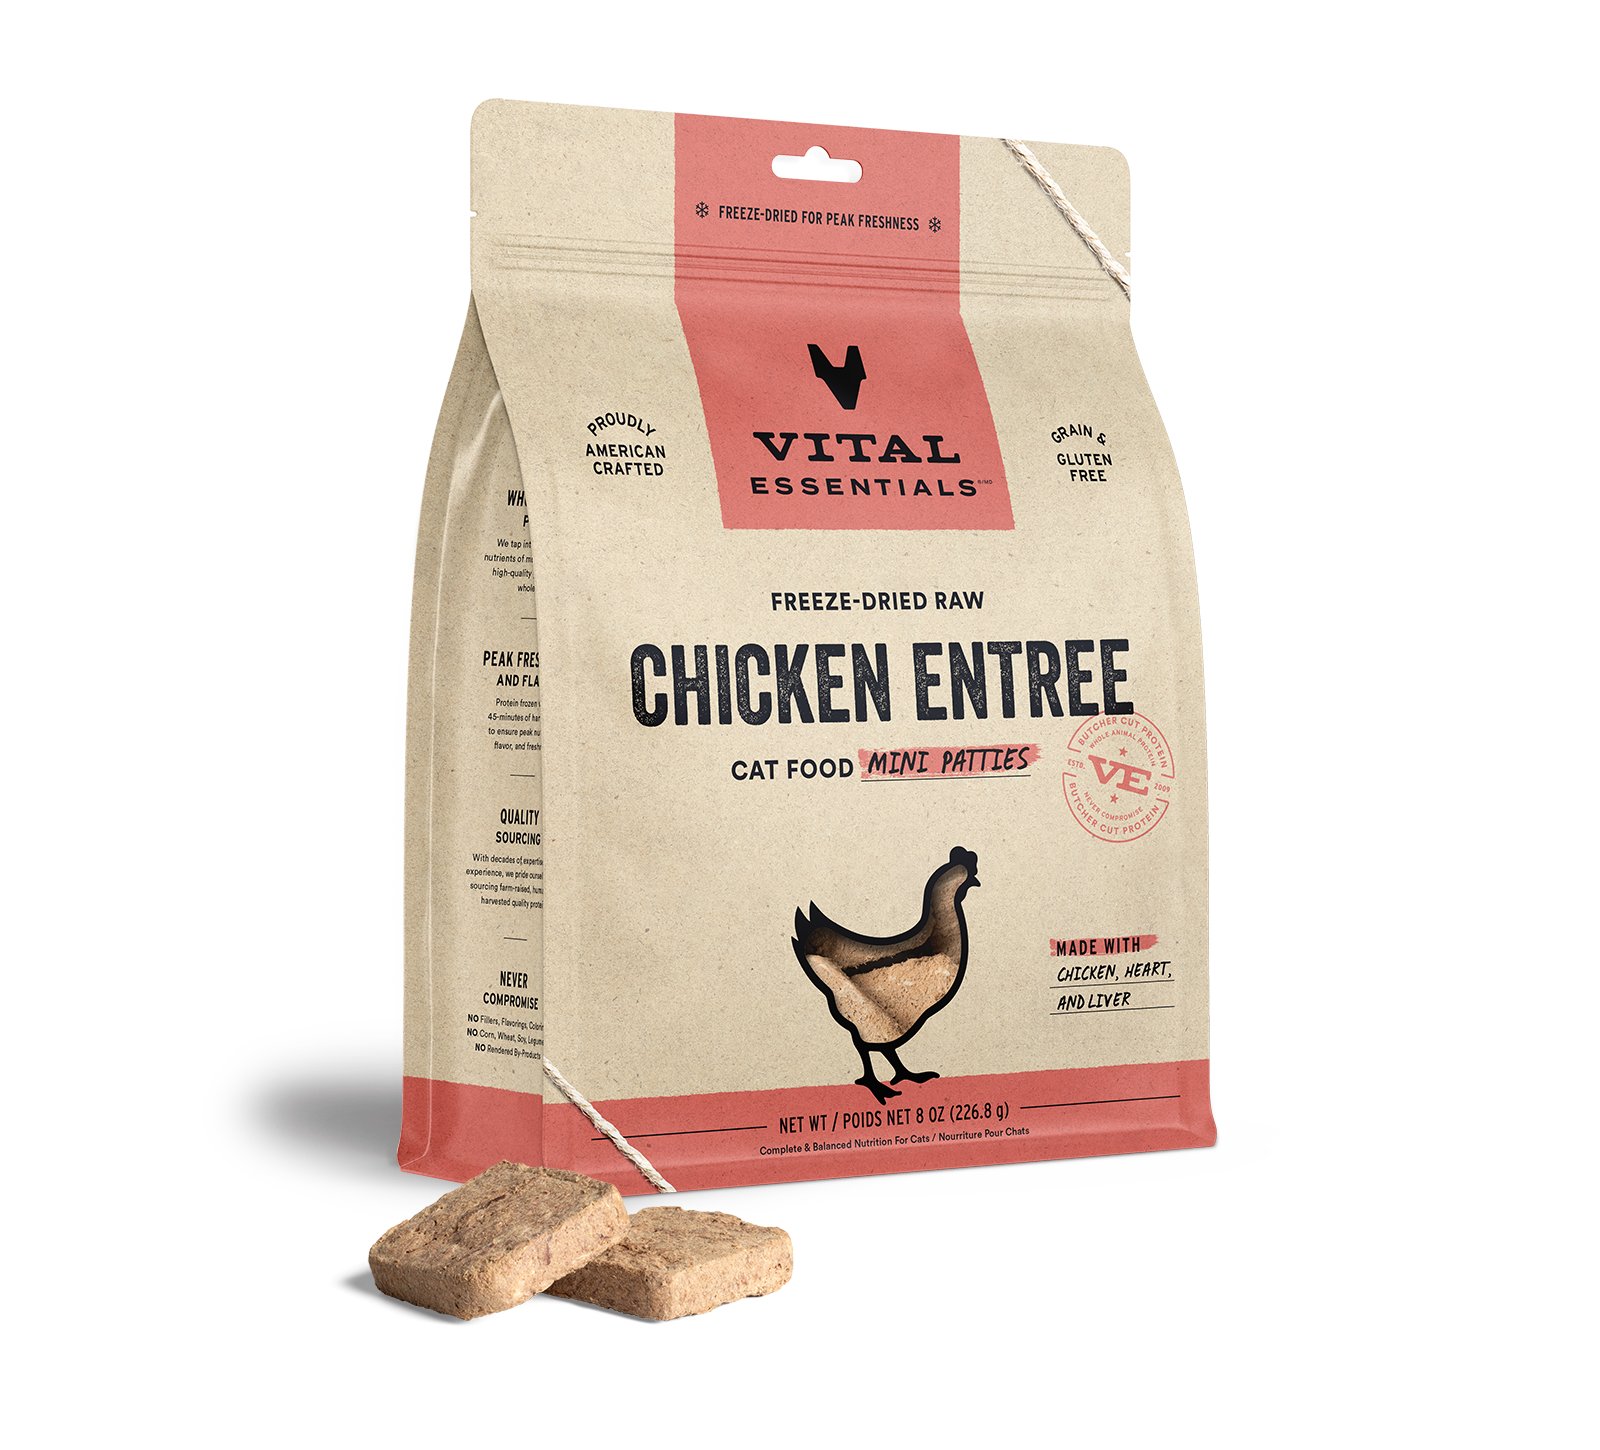 Vital Essentials Freeze-Dried Raw Chicken Entree Cat Food Mini Patties, 8 oz - Health/First Aid